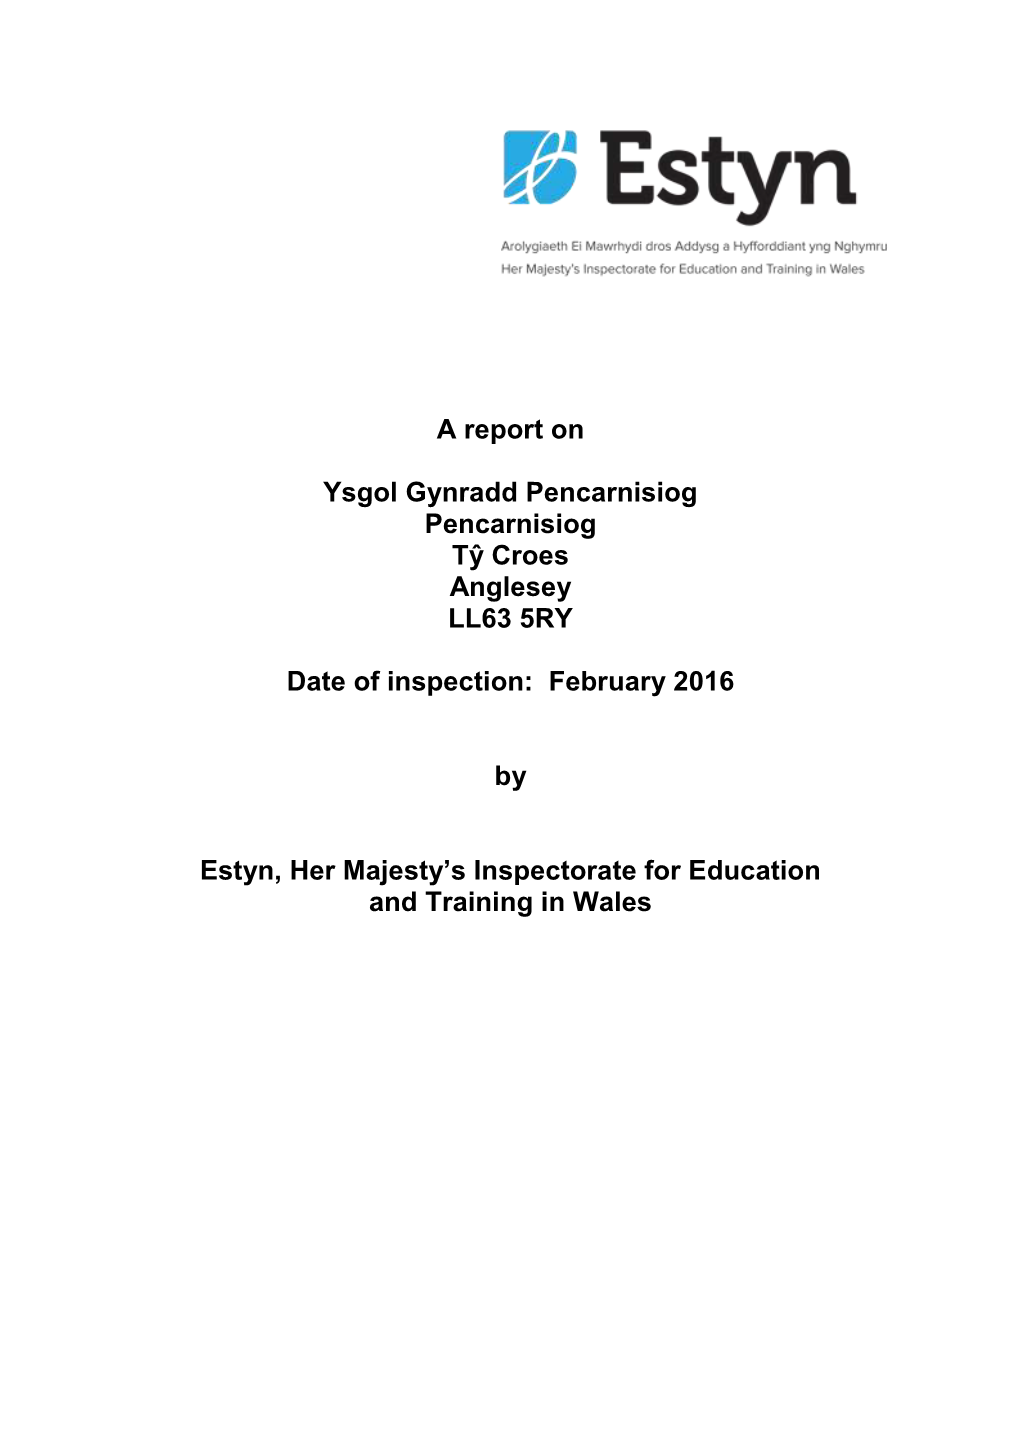 Inspection Report Ysgol Gynradd Pencarnisiog 2016